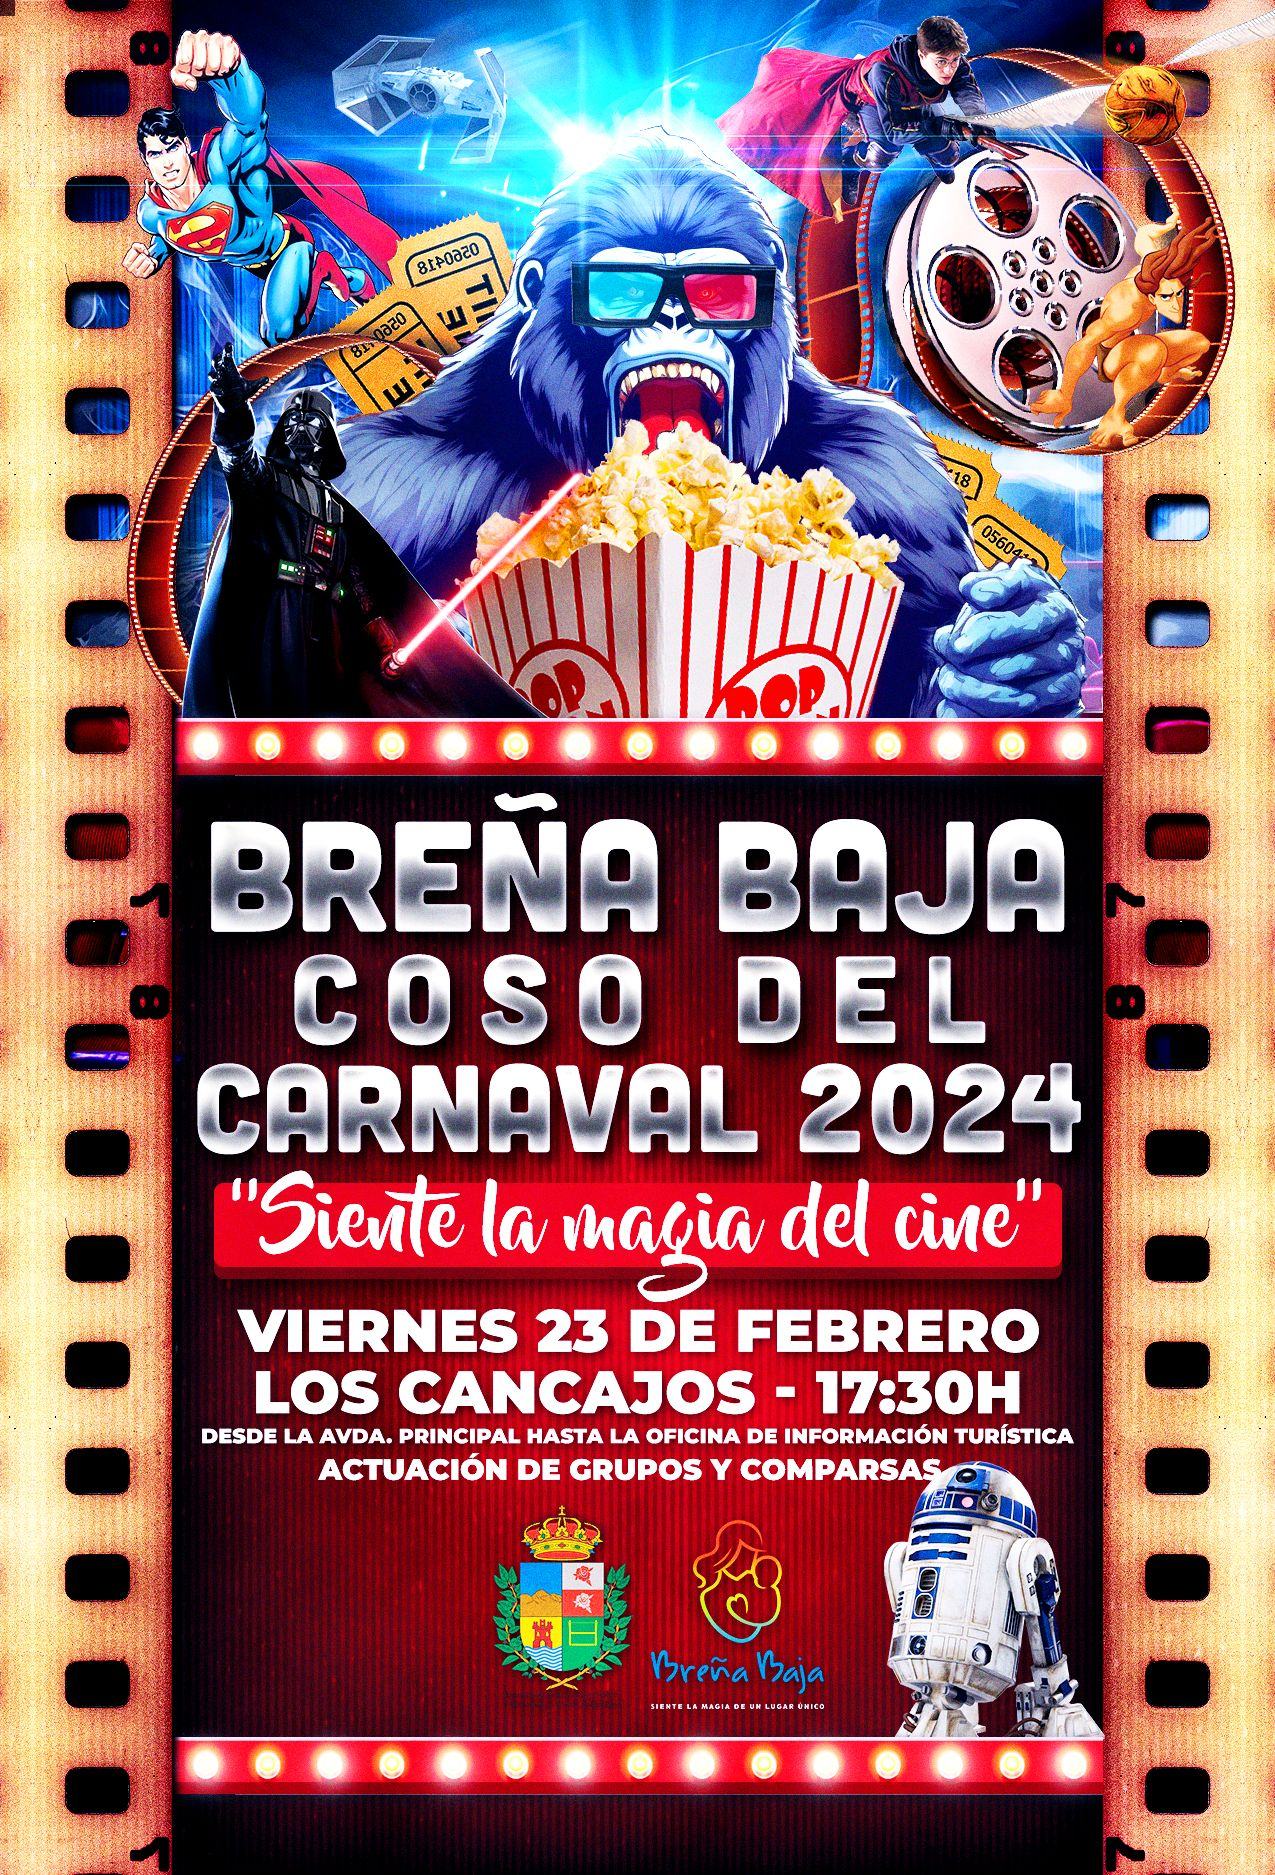 Coso del Carnaval en Breña Baja